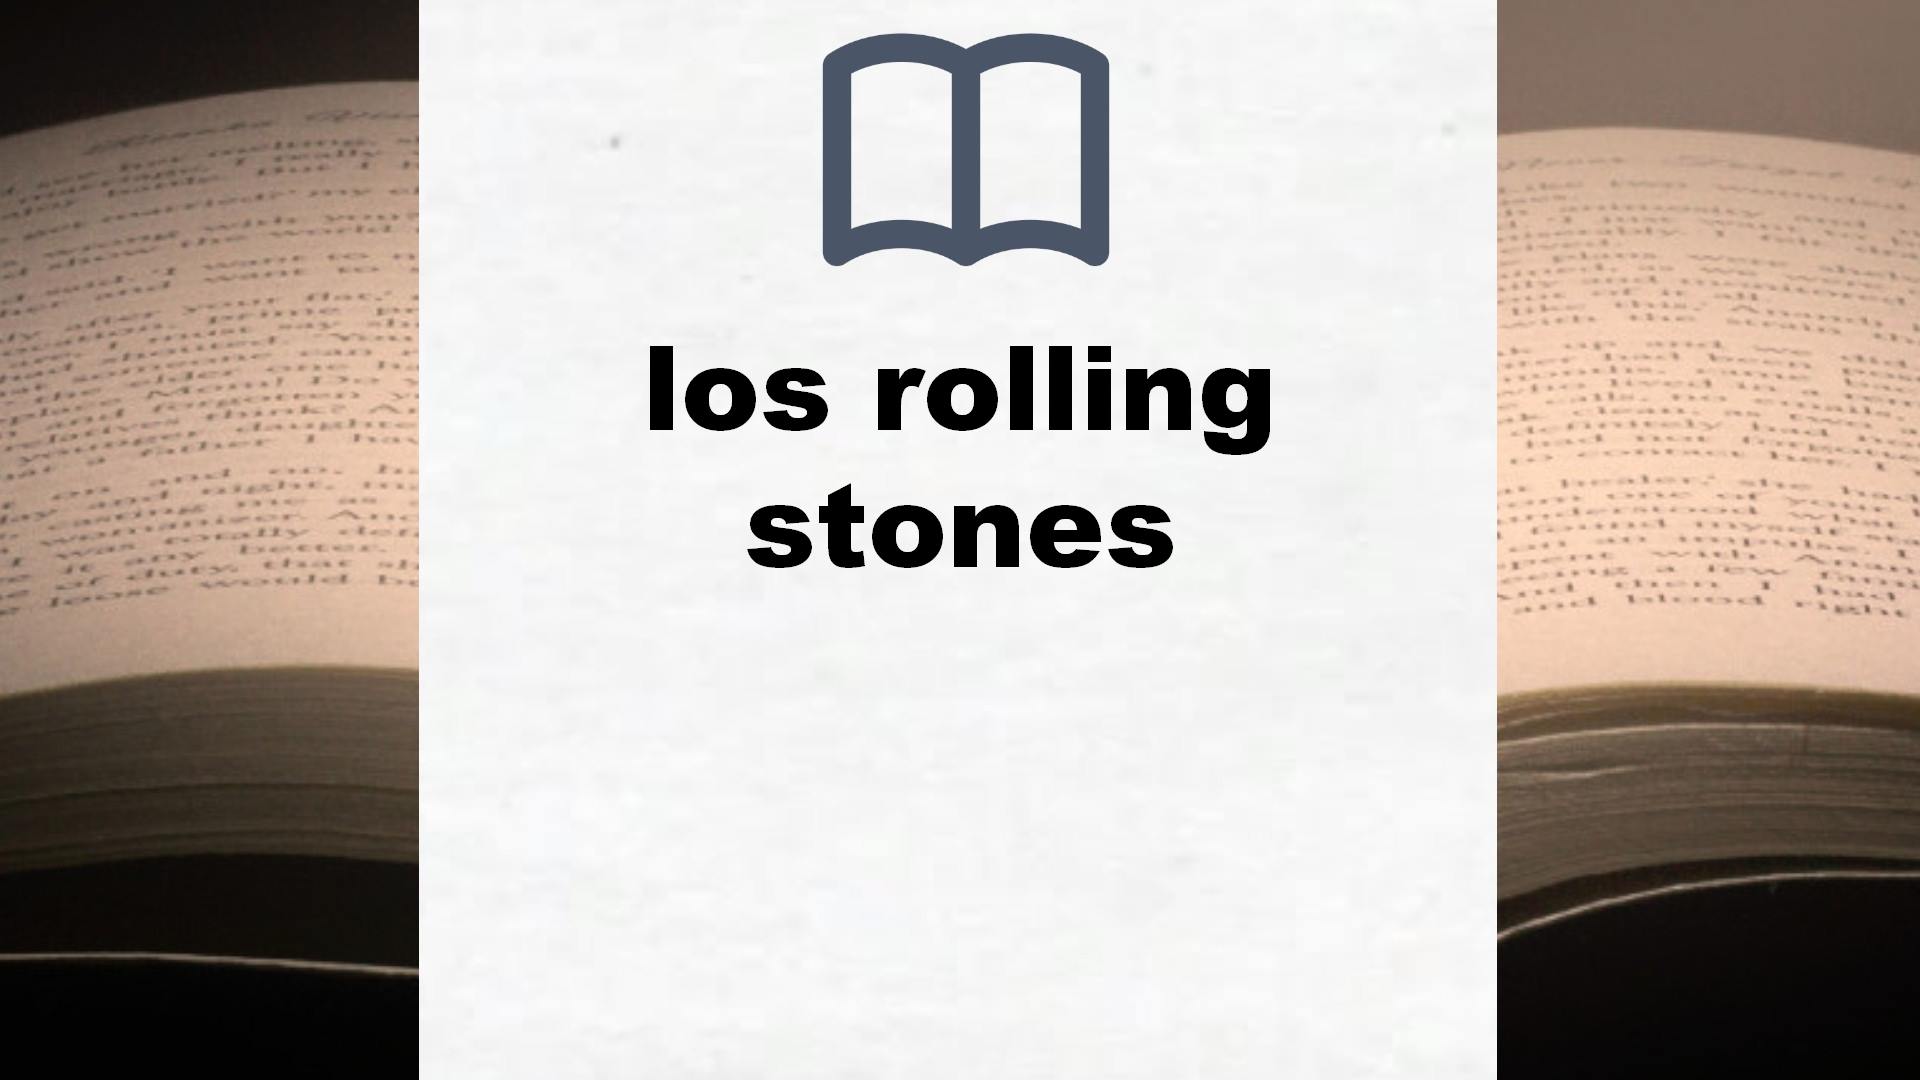 Libros sobre los rolling stones